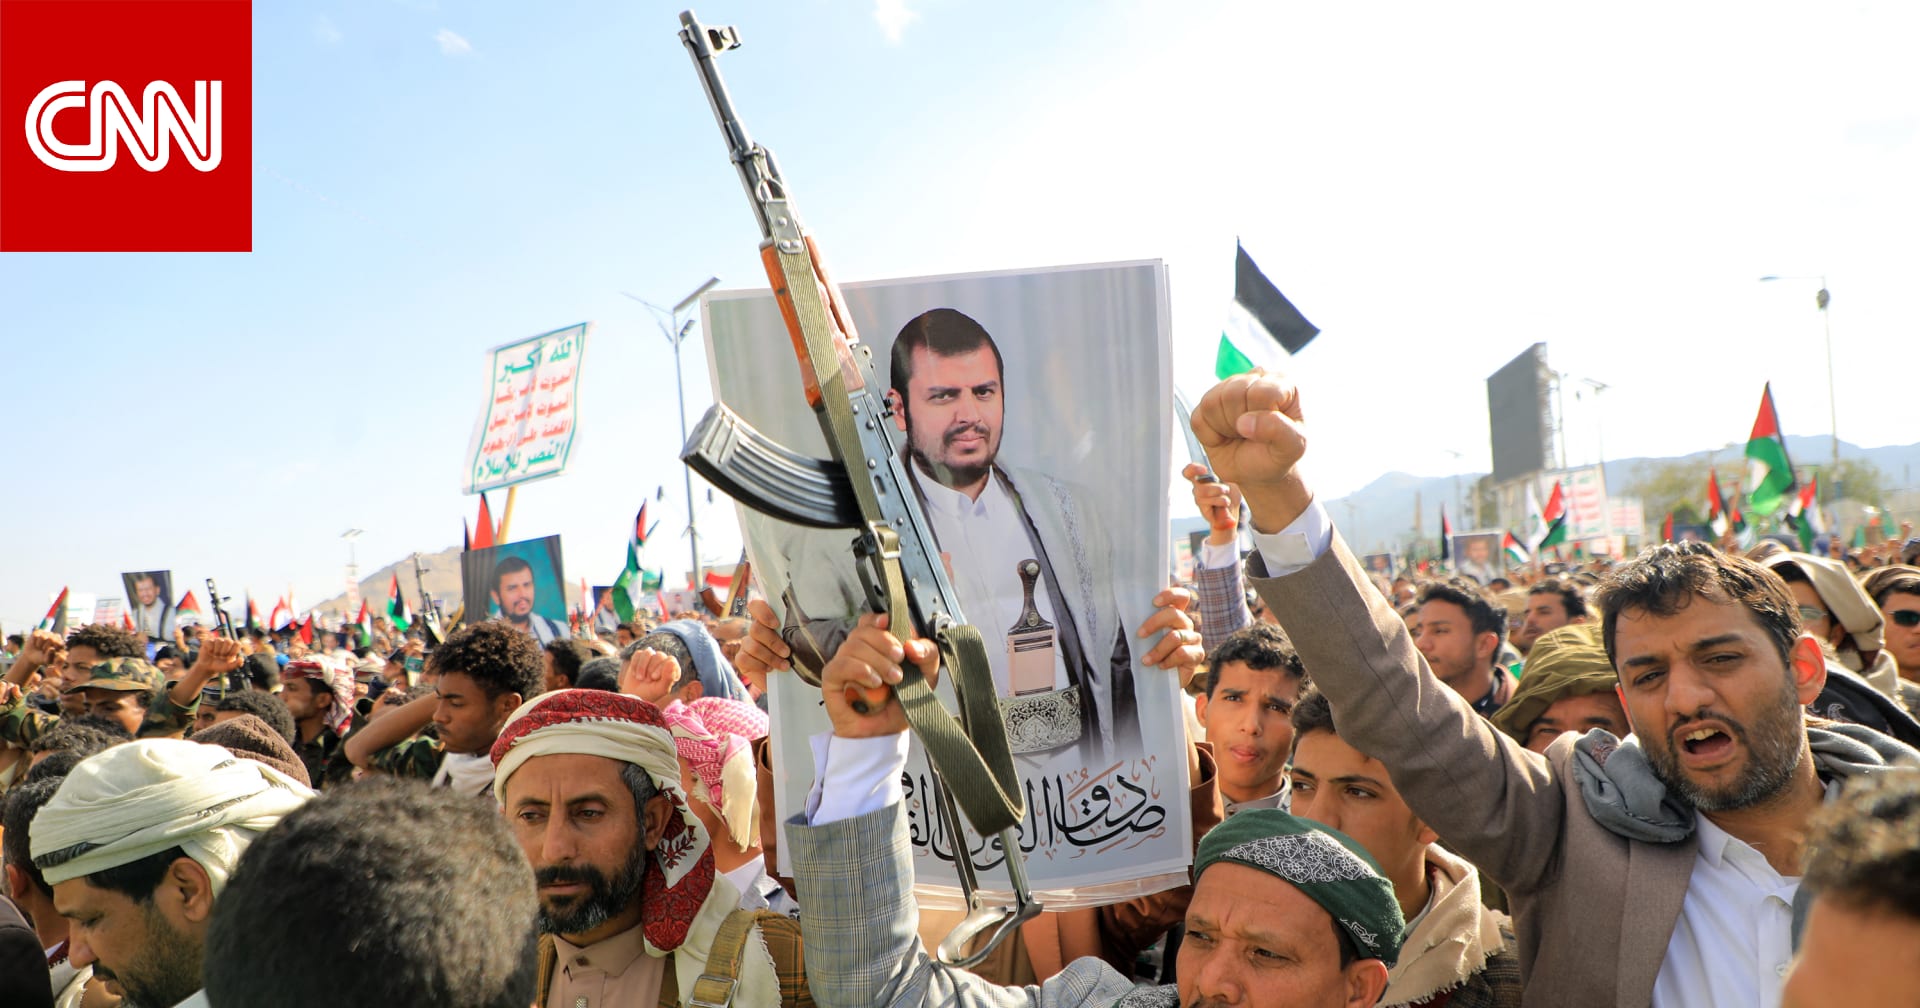 الحوثيون يتوعدون بـ"رد قوي وفعال" على الضربات الأمريكية الأخيرة